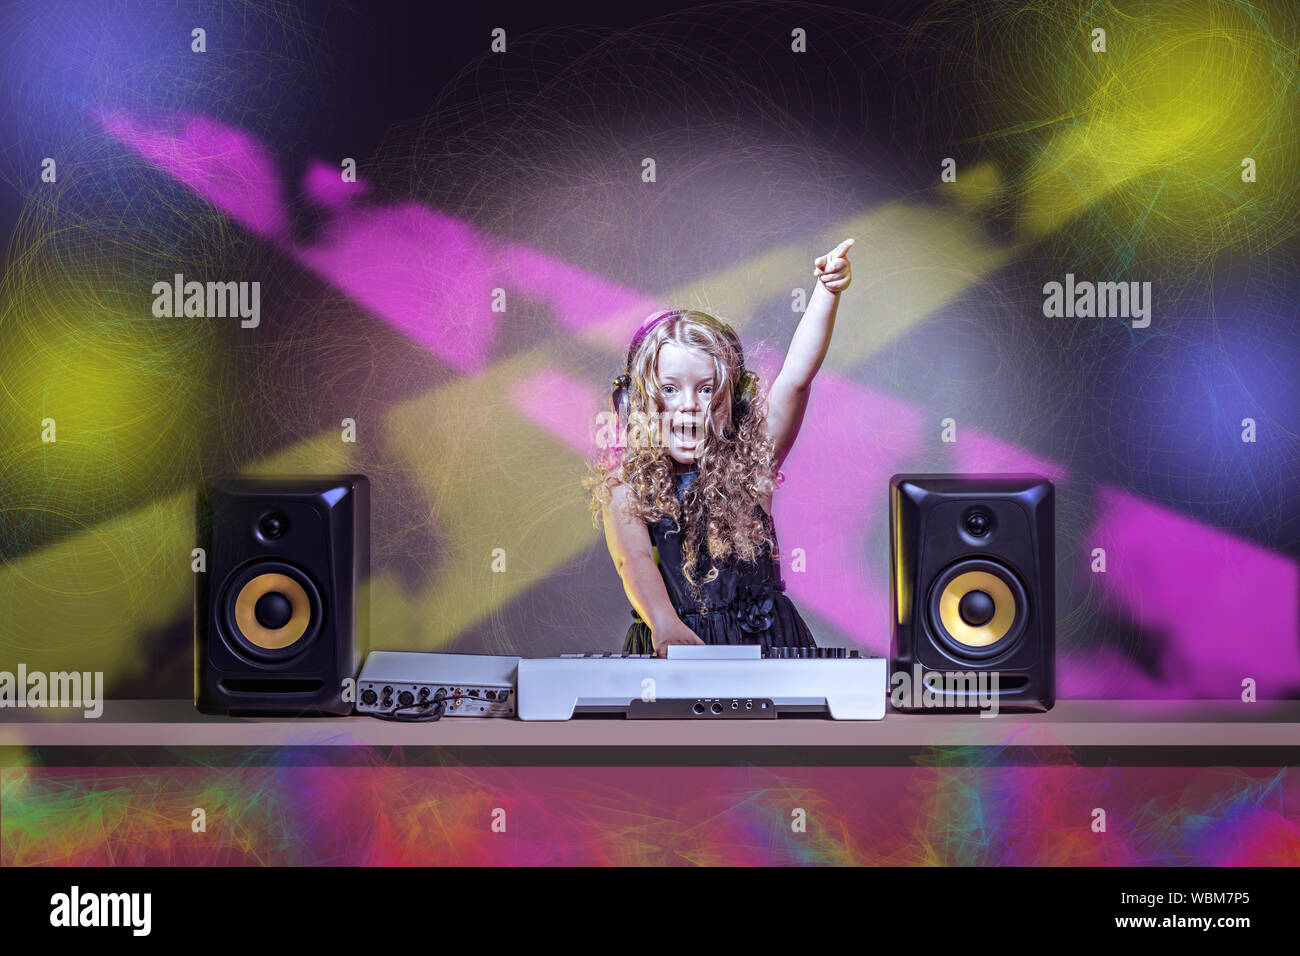 a gradeschooler girl as DJ at the kids disco Stock Photo